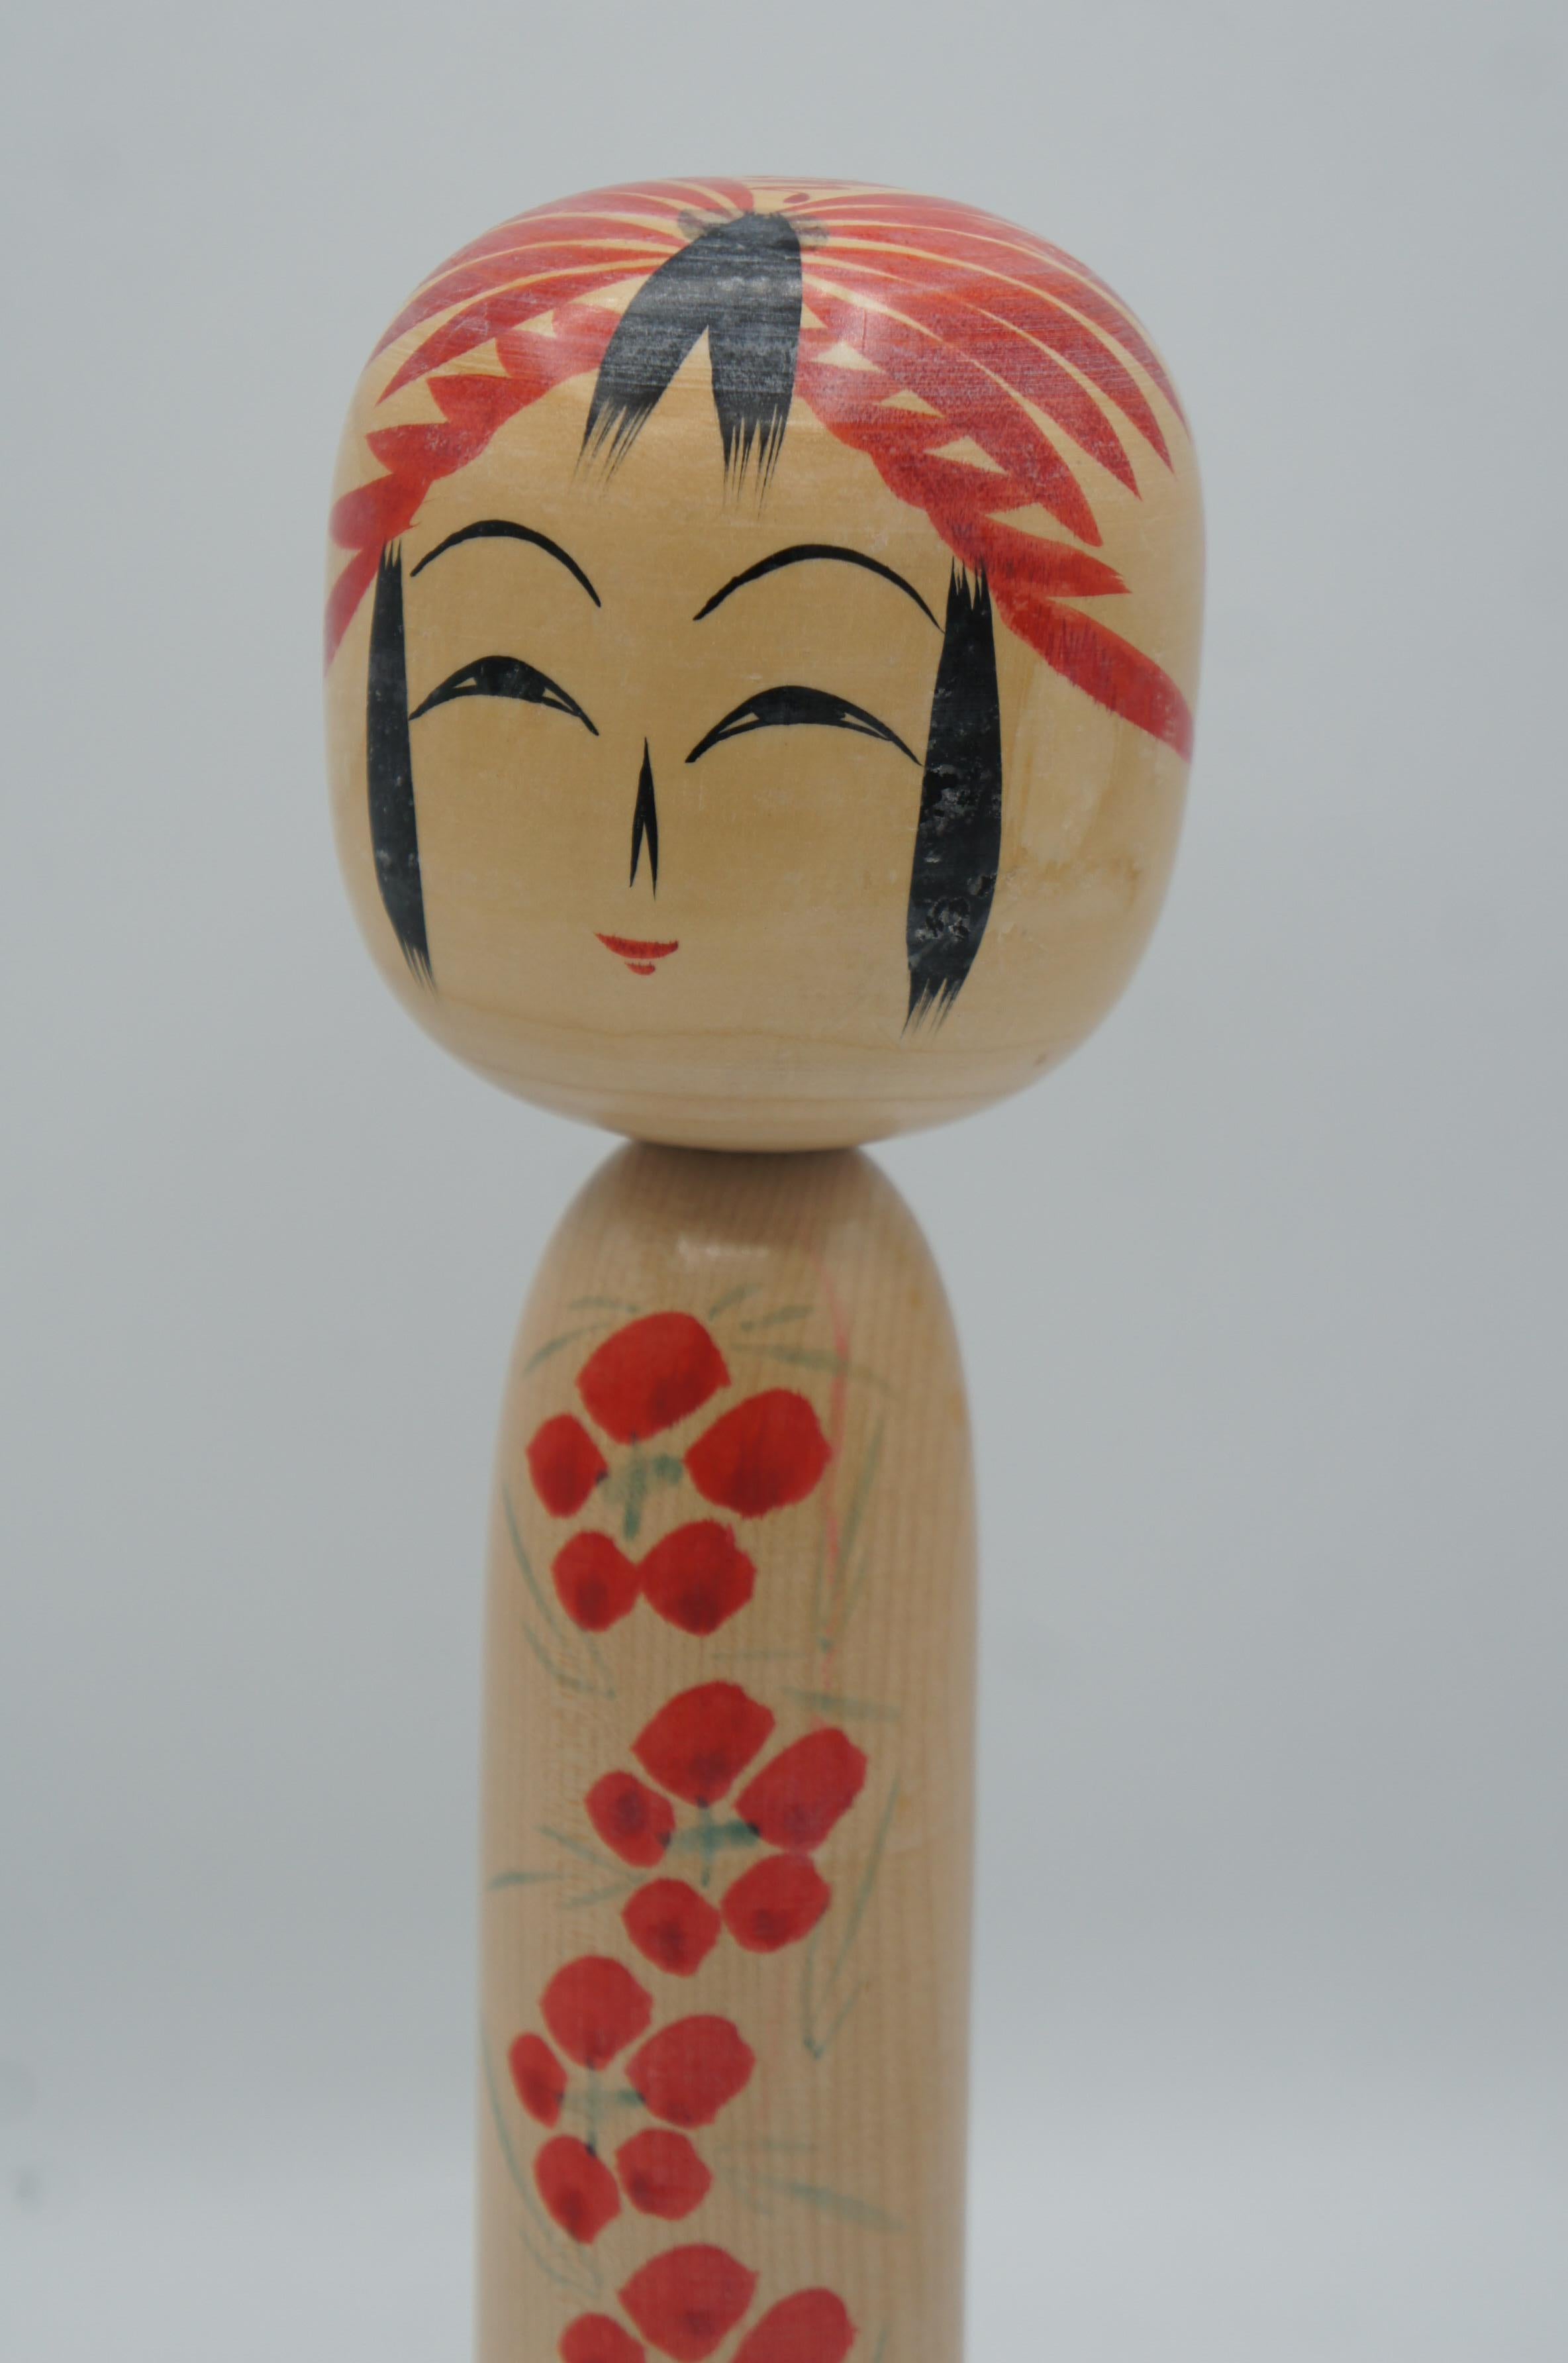 Dies ist eine Holzpuppe, die auf Japanisch Kokeshi genannt wird.
Dieses Kokeshi wurde im Togatta-Stil hergestellt. Und der Kokeshi-Künstler, der dies gemacht hat, ist Kouichi SATO.
Er wurde am 22. November 1929 geboren. Und das war 1978, am 29.